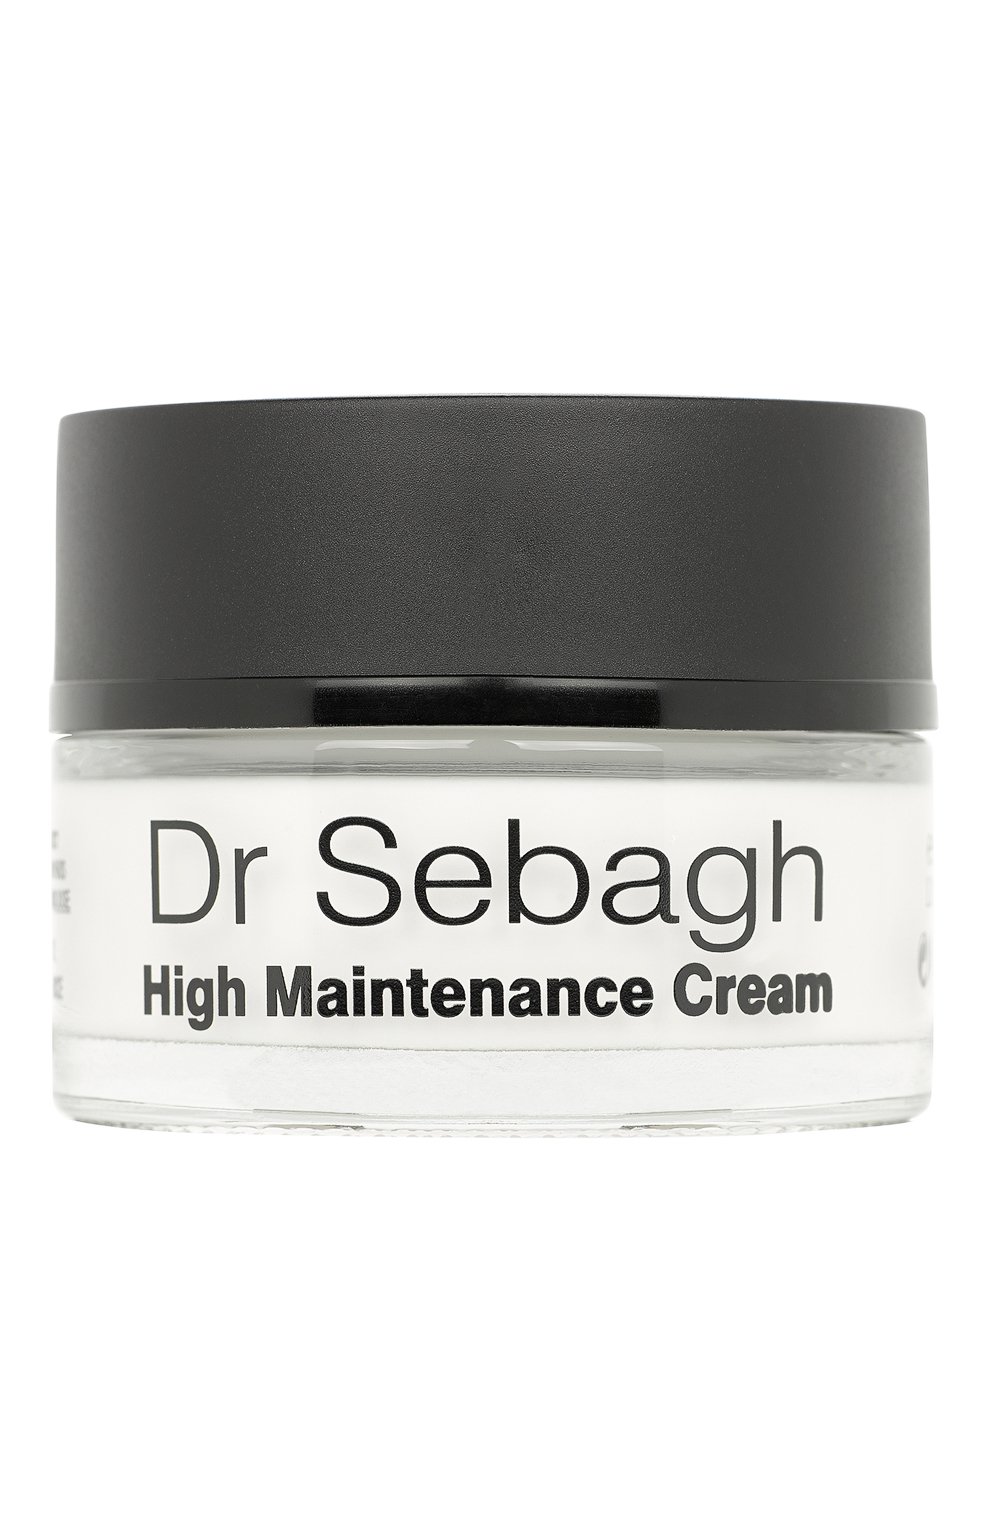 Крем absolute. Dr Sebagh High Maintenance Cream. Sebagh. Glow крем для лица. Dr.Sebagh Replenishing Cream.